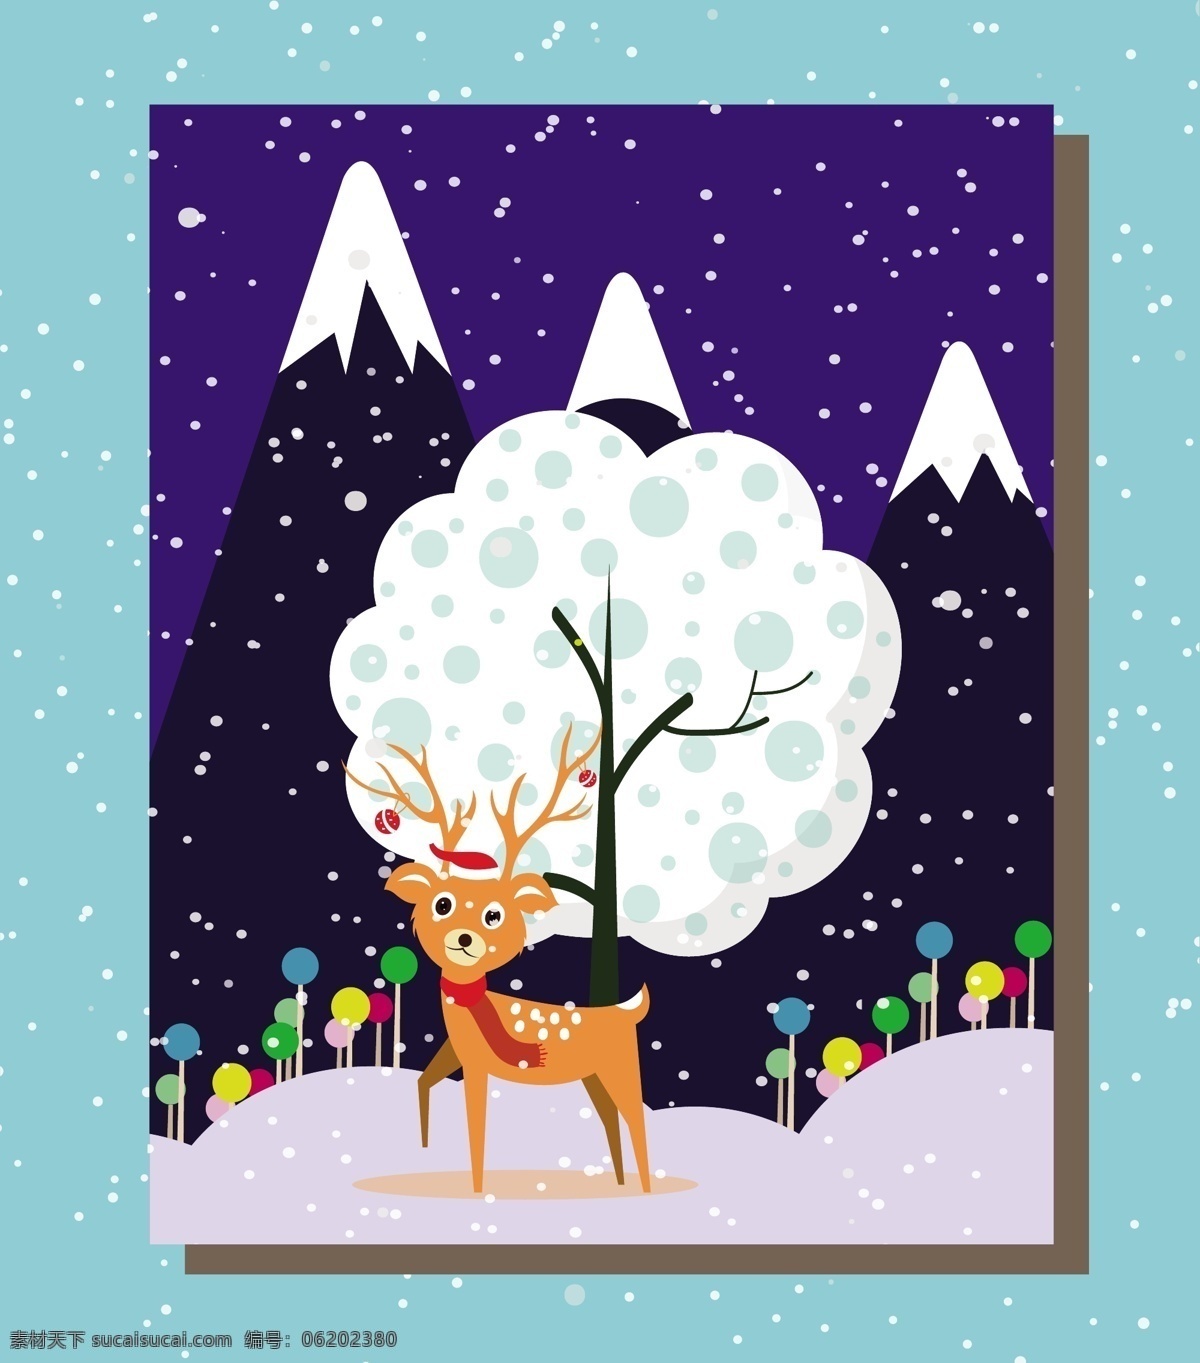 冬季 可爱 圣诞 元素 圣诞海报 圣诞节 冬天海报 麋鹿 树木 雪山 下雪